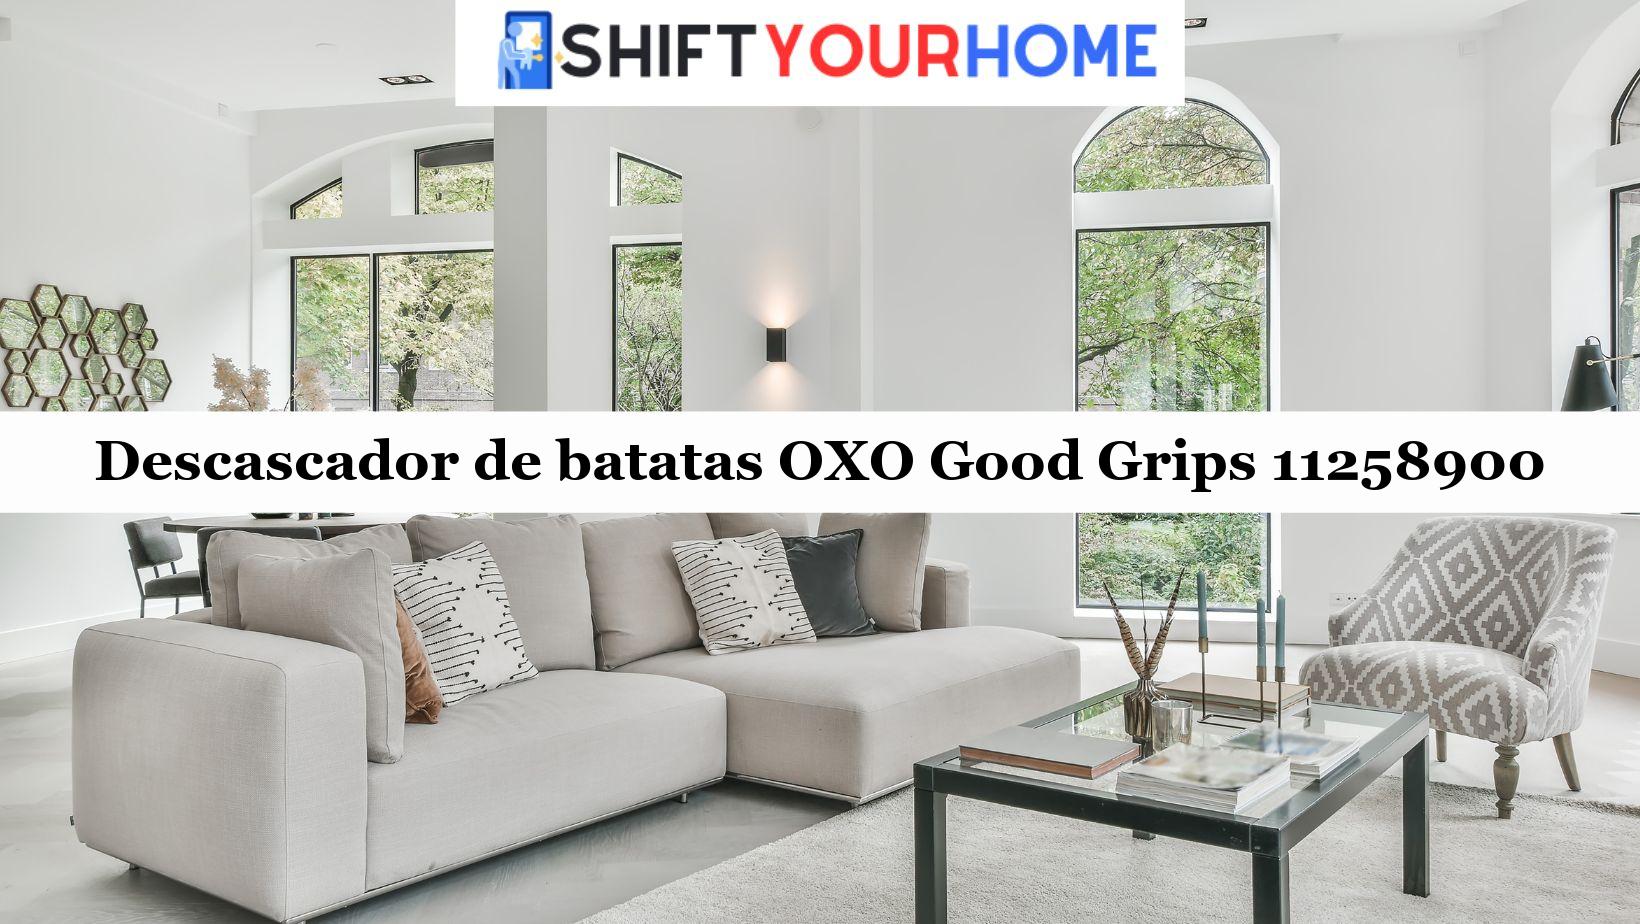 Descascador de batatas OXO Good Grips 11258900: Análise Completa